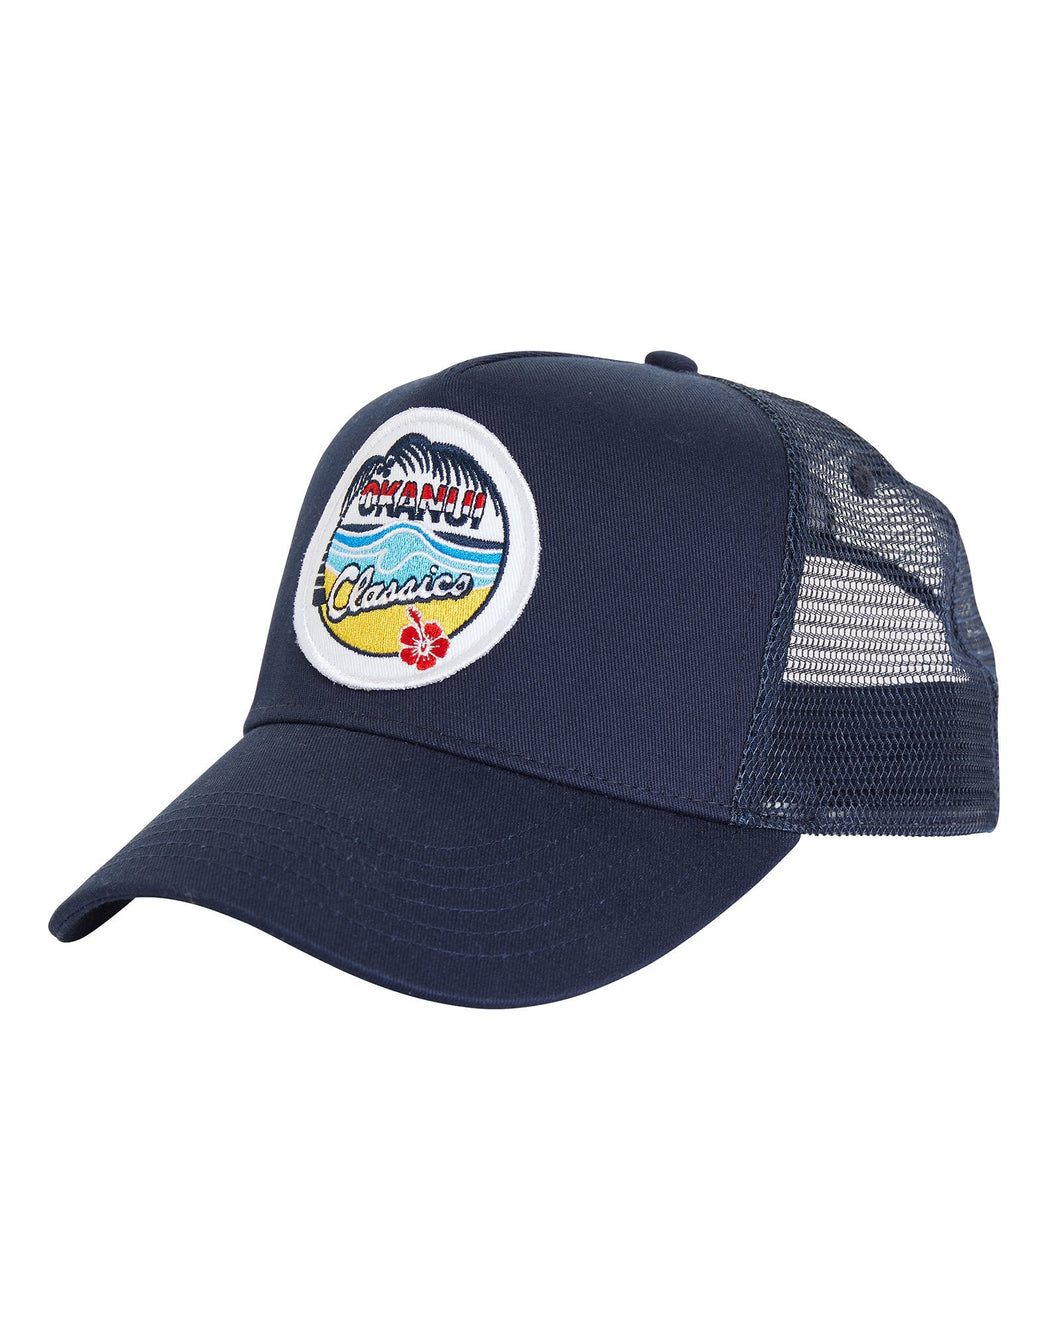 Twill Front Trucker Hat - Navy